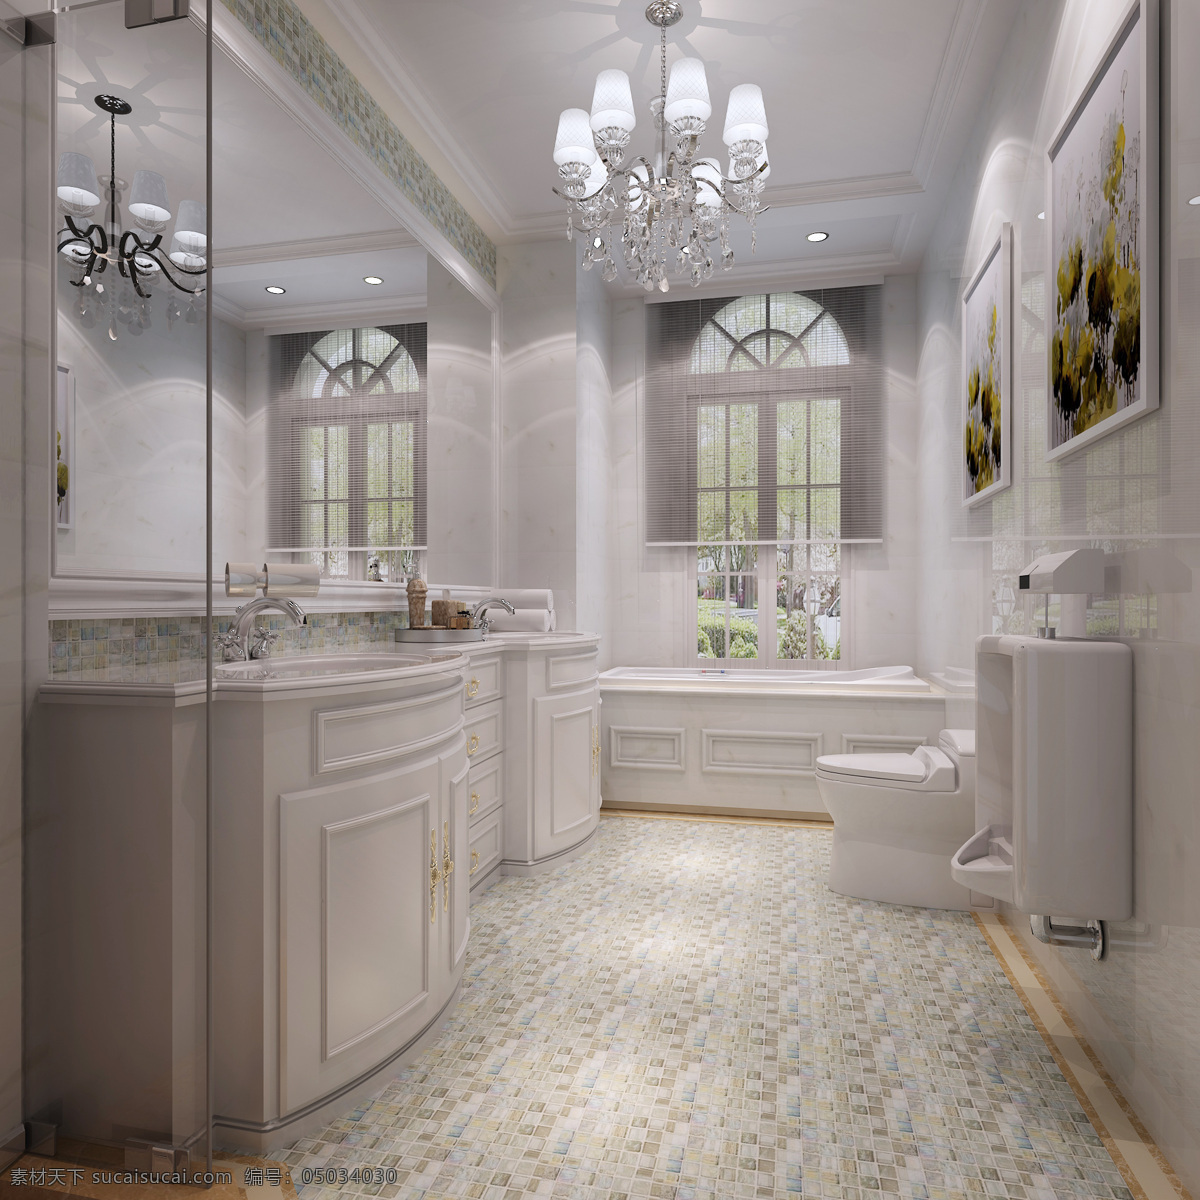 卫生间 白色风格 马赛克石材 地面边线 淋浴隔断 浴缸 厨房 效果图 3d设计 室内模型